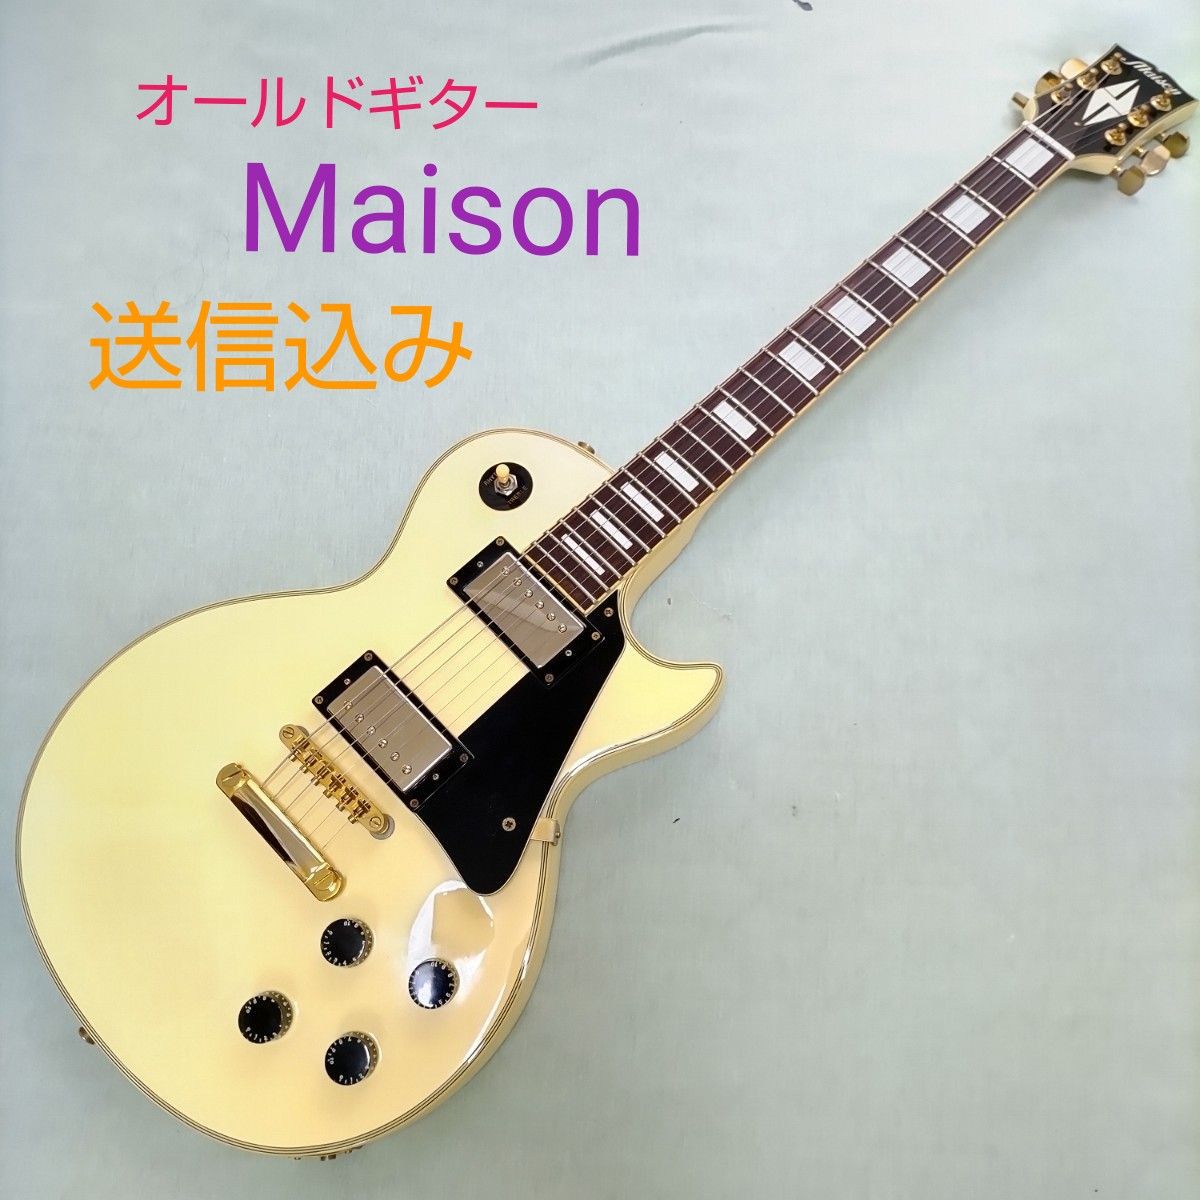 Maison メイソン エレキギター レスポールタイプ サクラ楽器オリジナル